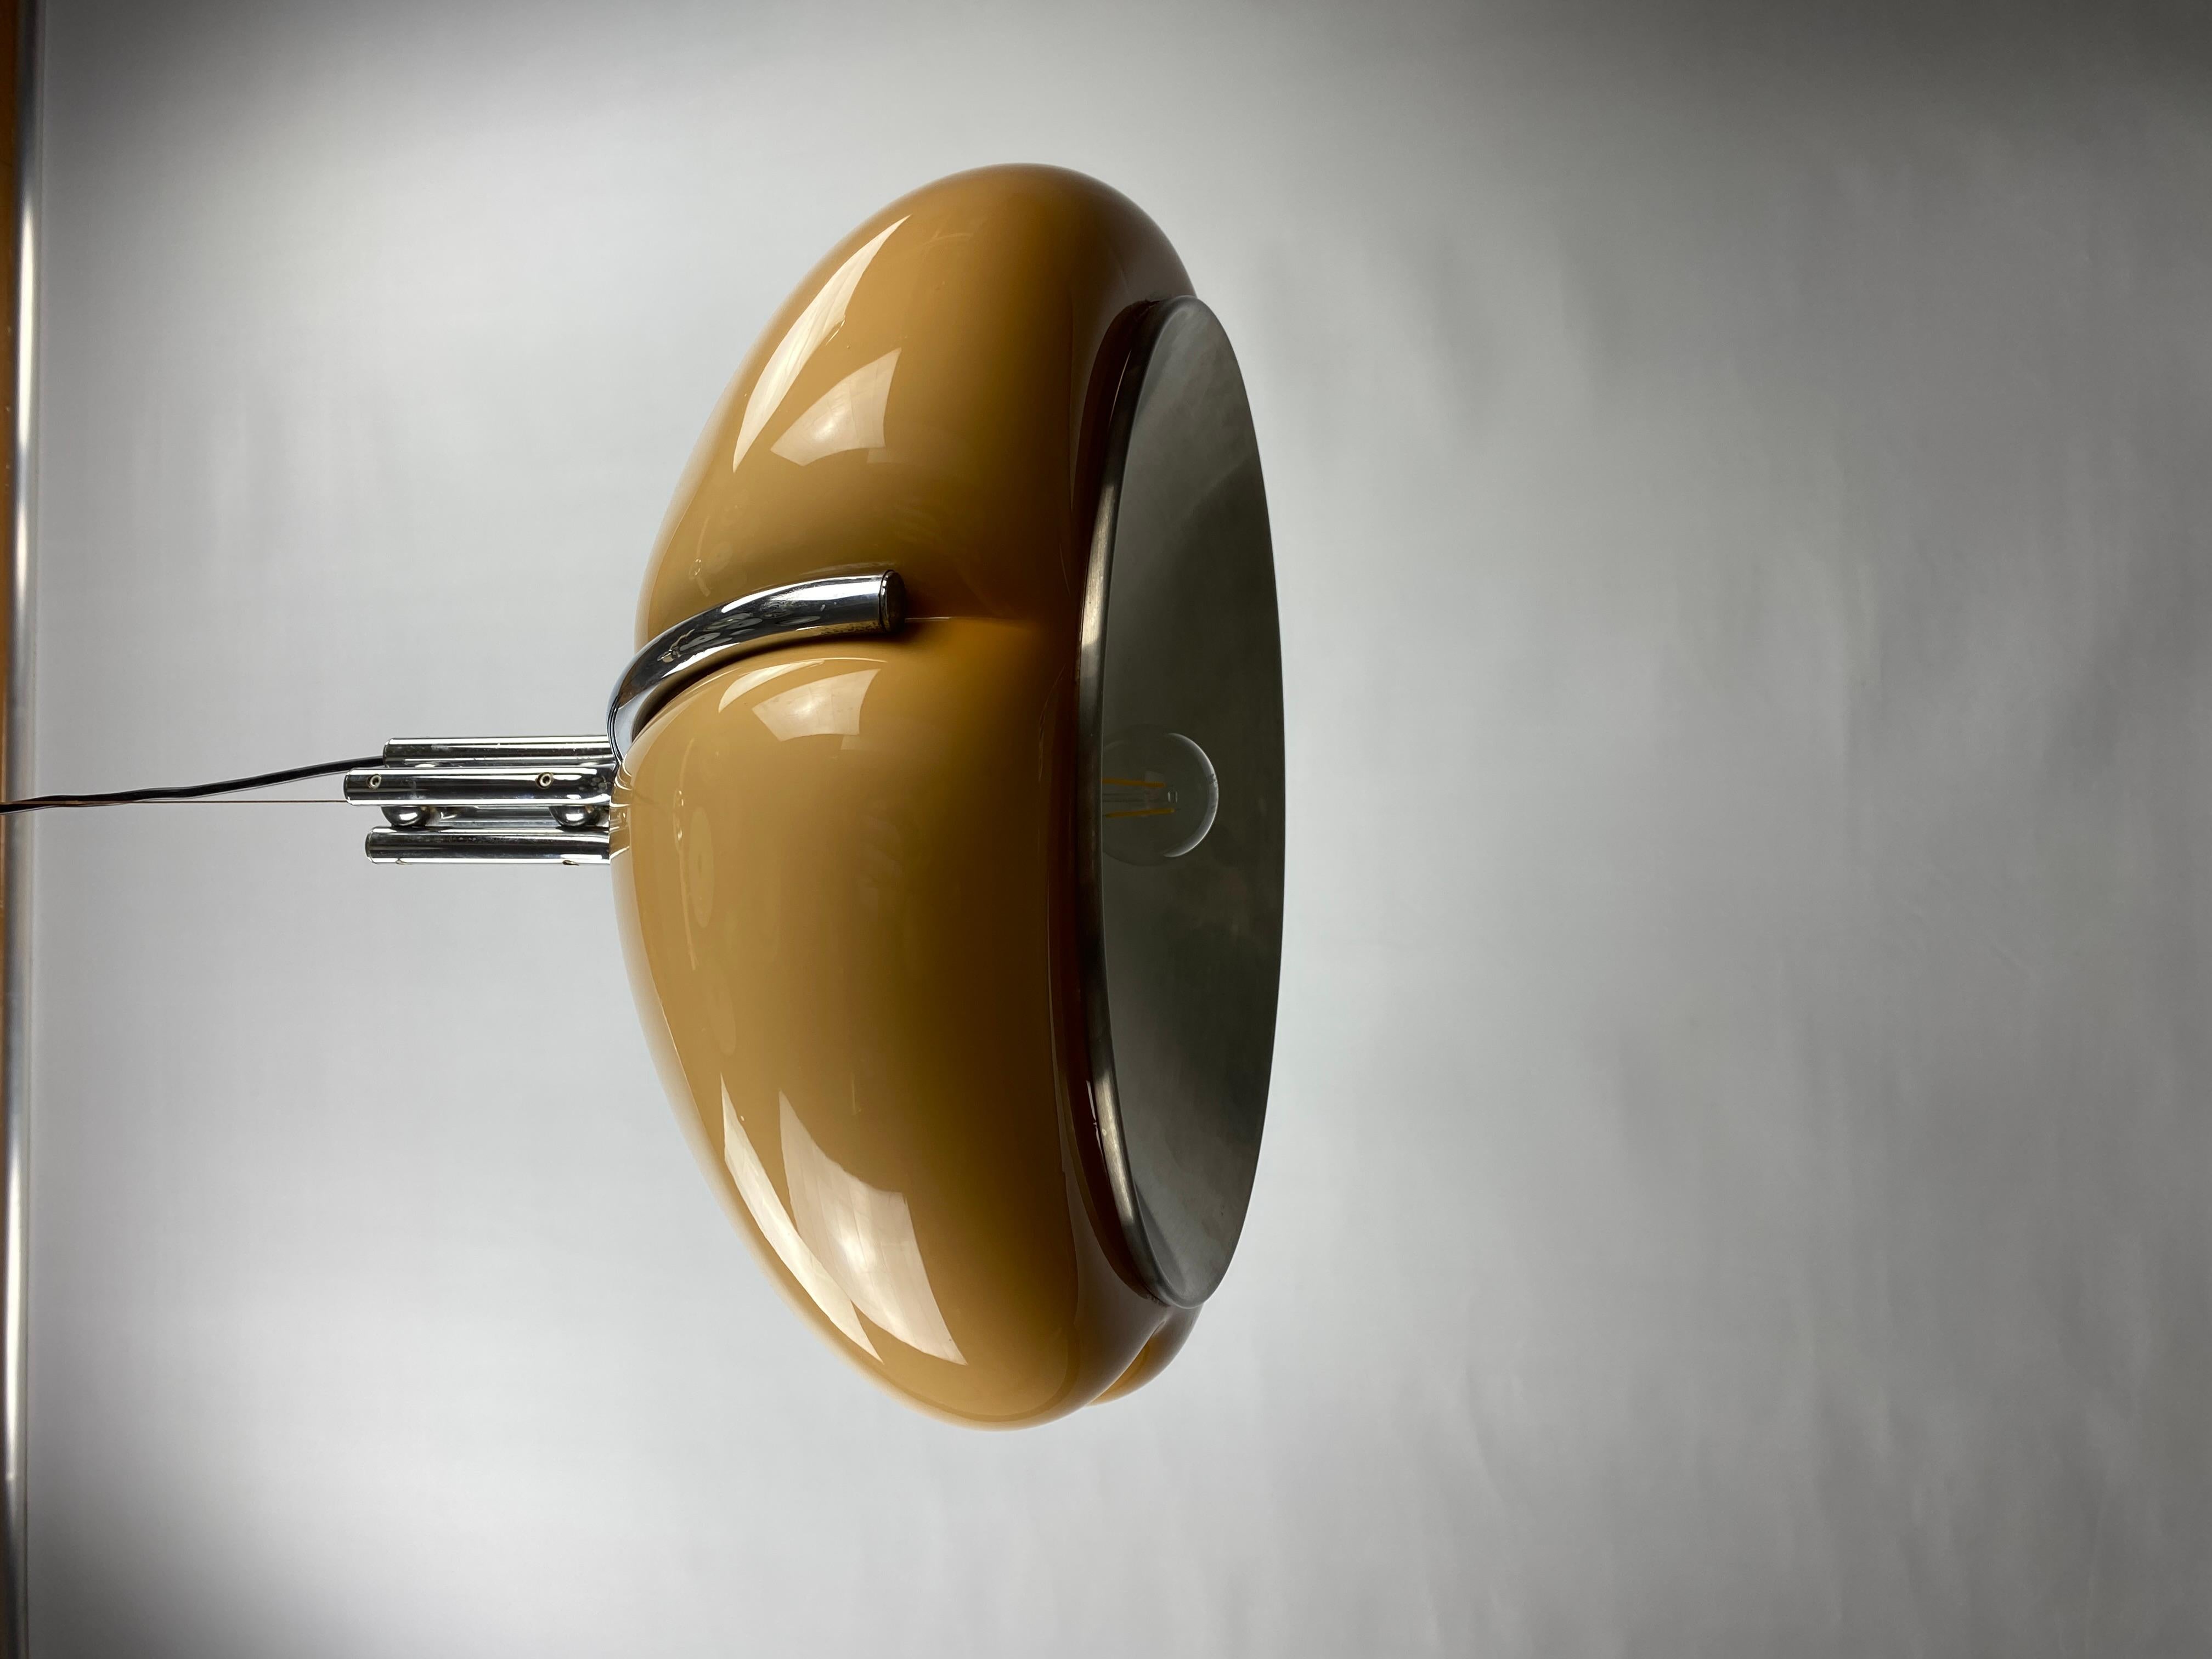 Cette lampe suspendue emblématique Quadrifoglio a été conçue par l'équipe de design de Harvey Guzzini, studio 6G, en Italie dans les années 60 pour Meblo, Yougoslavie.

Le Quadrifoglio est la signification italienne d'un trèfle à quatre feuilles.